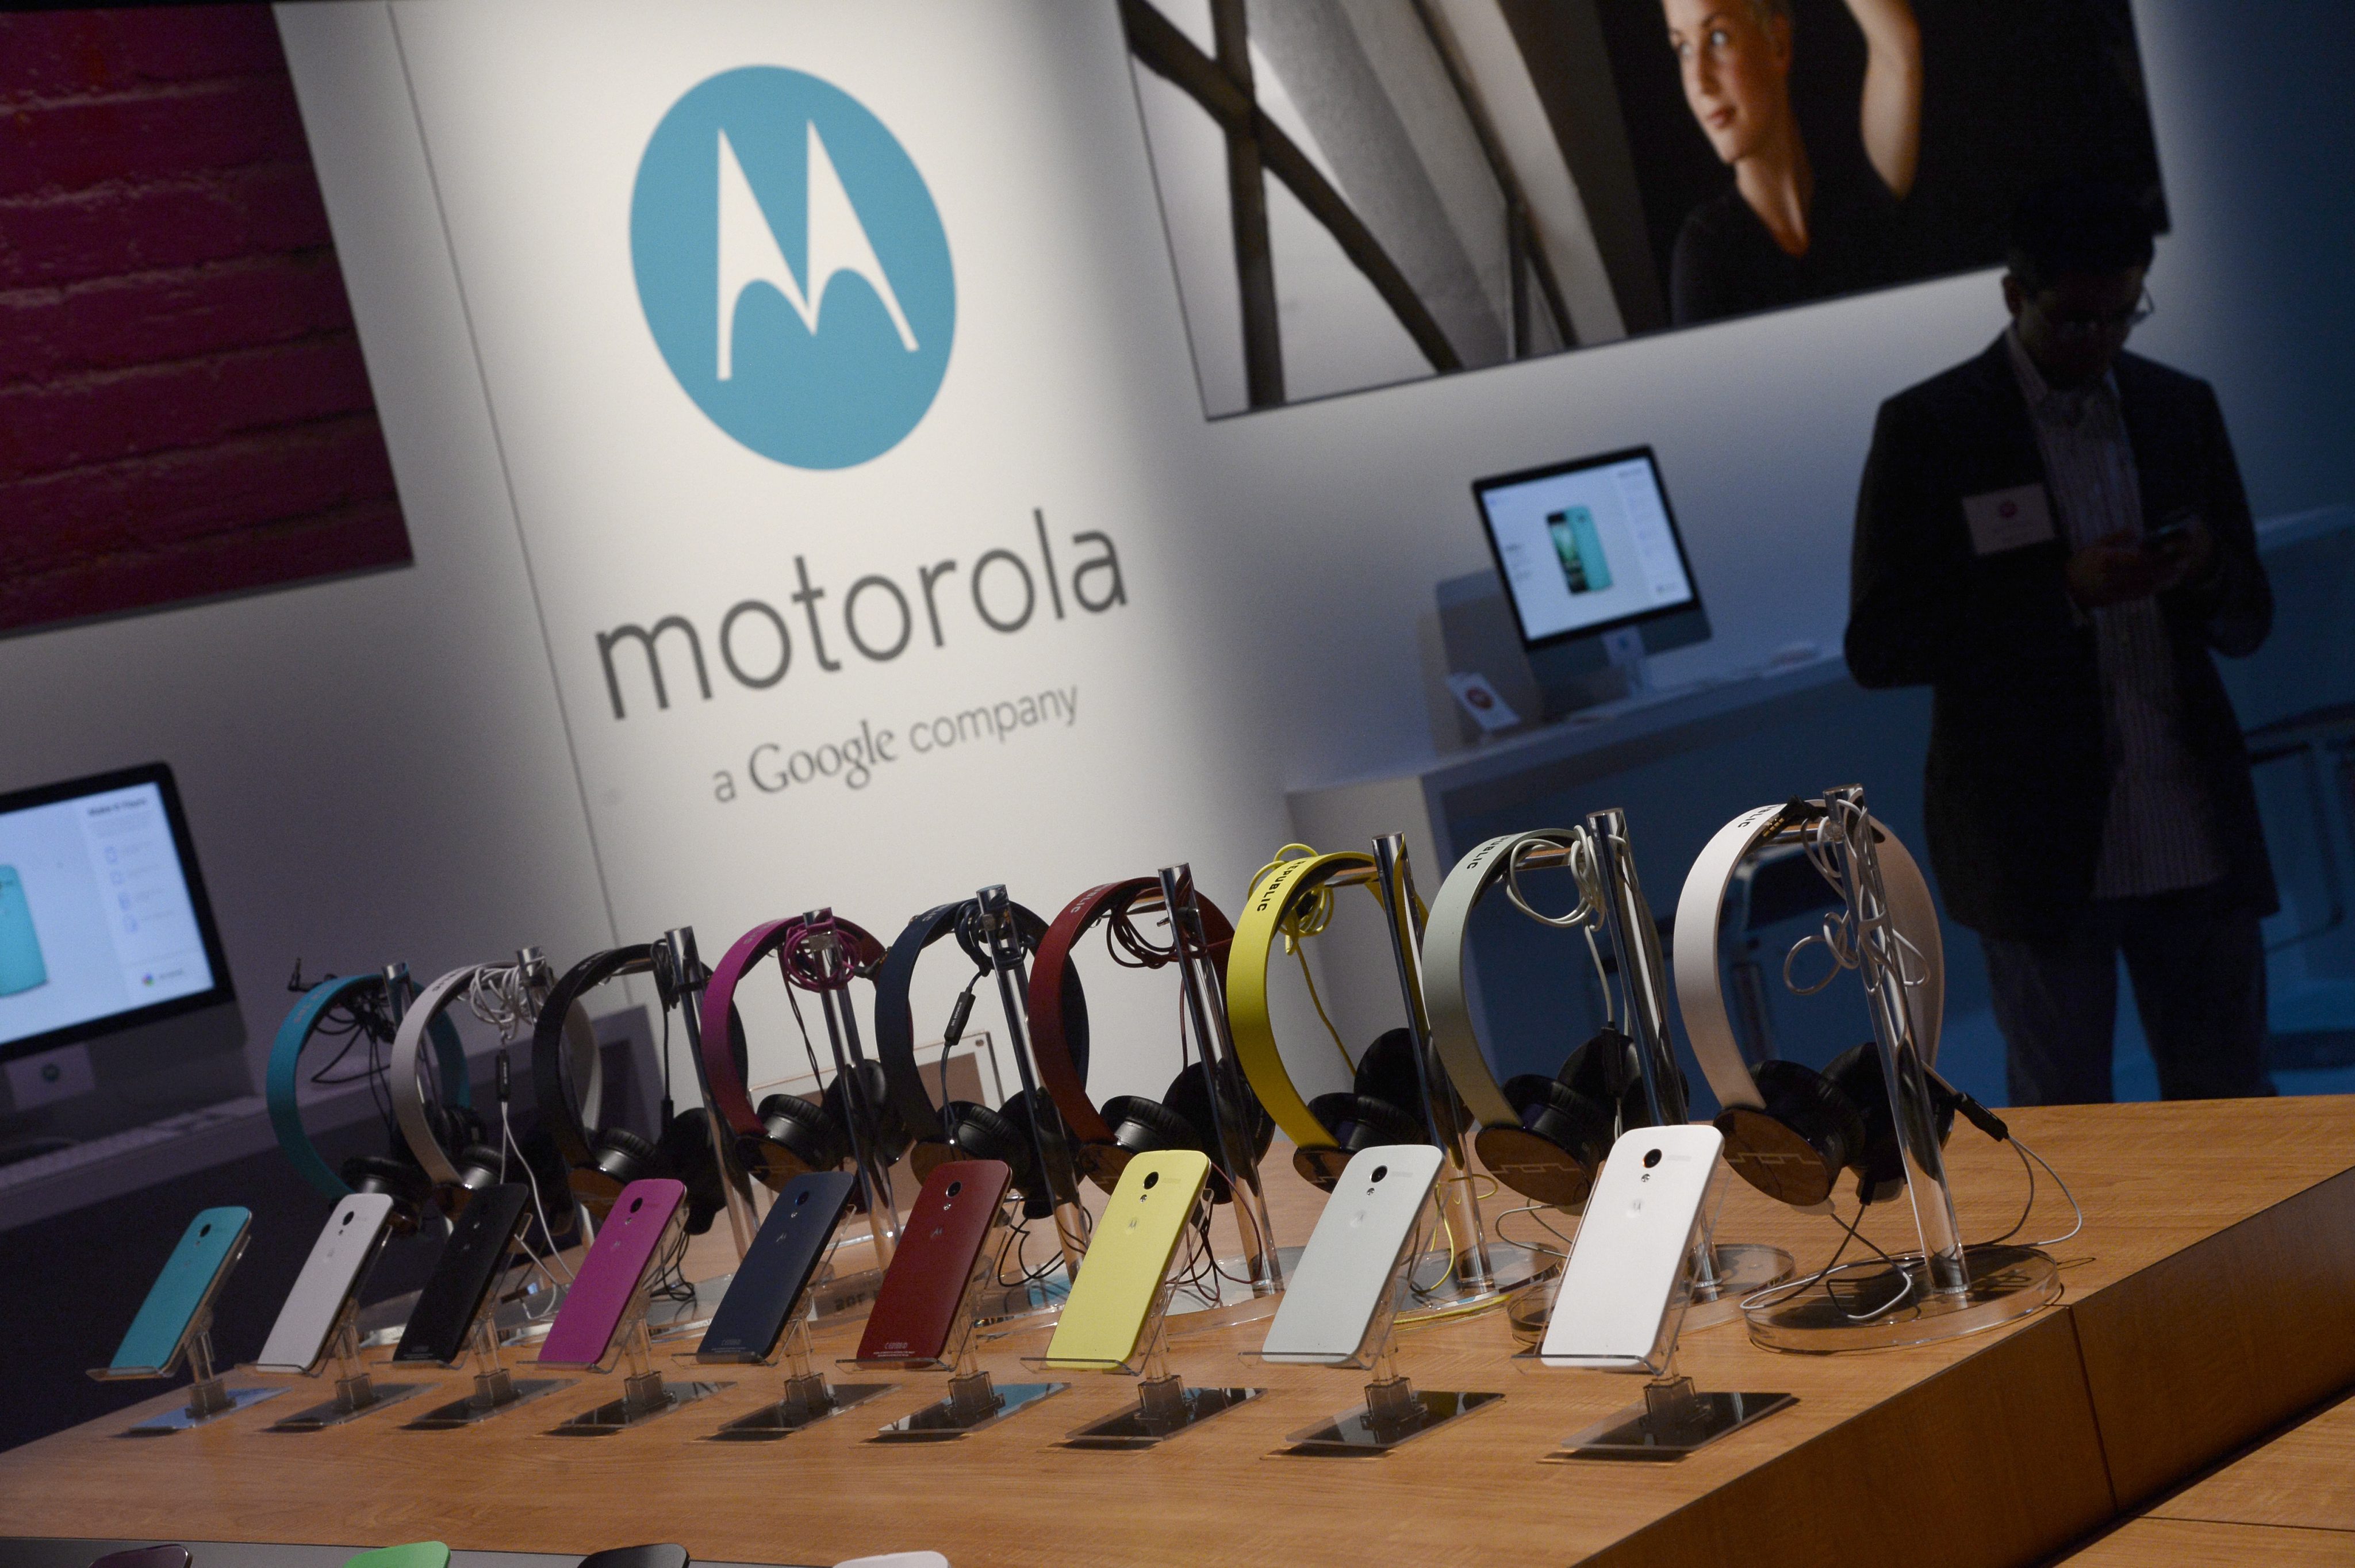 Motorola company